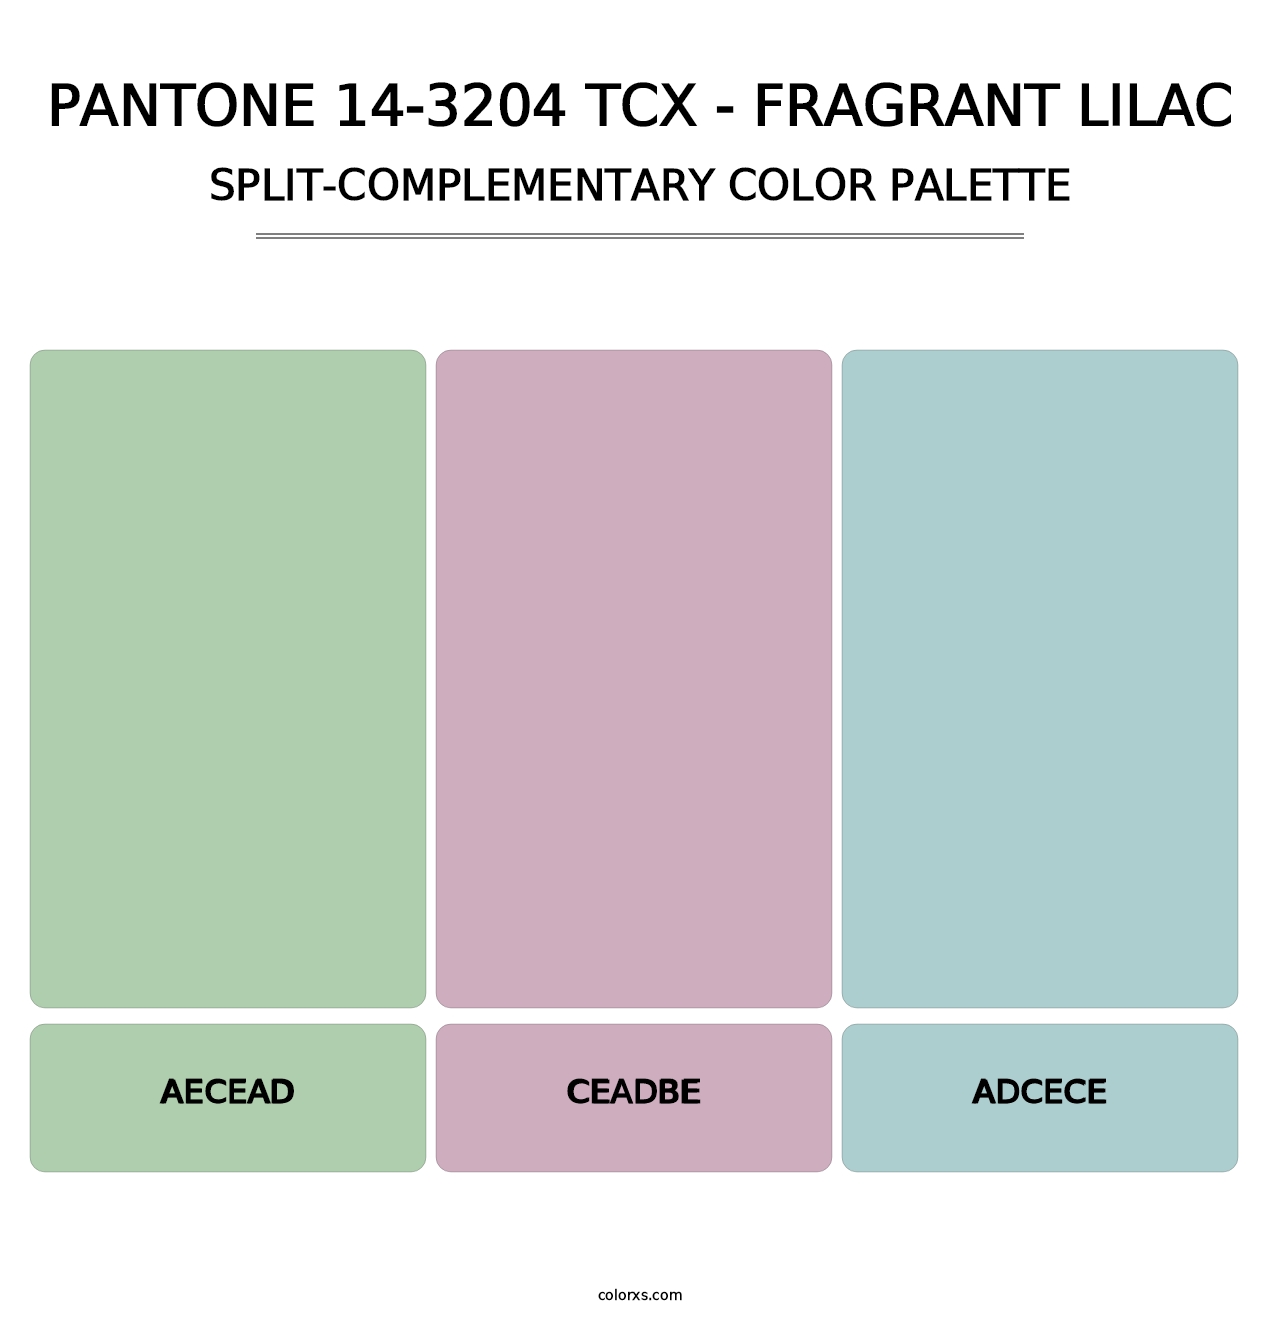 PANTONE 14-3204 TCX - Fragrant Lilac - Split-Complementary Color Palette